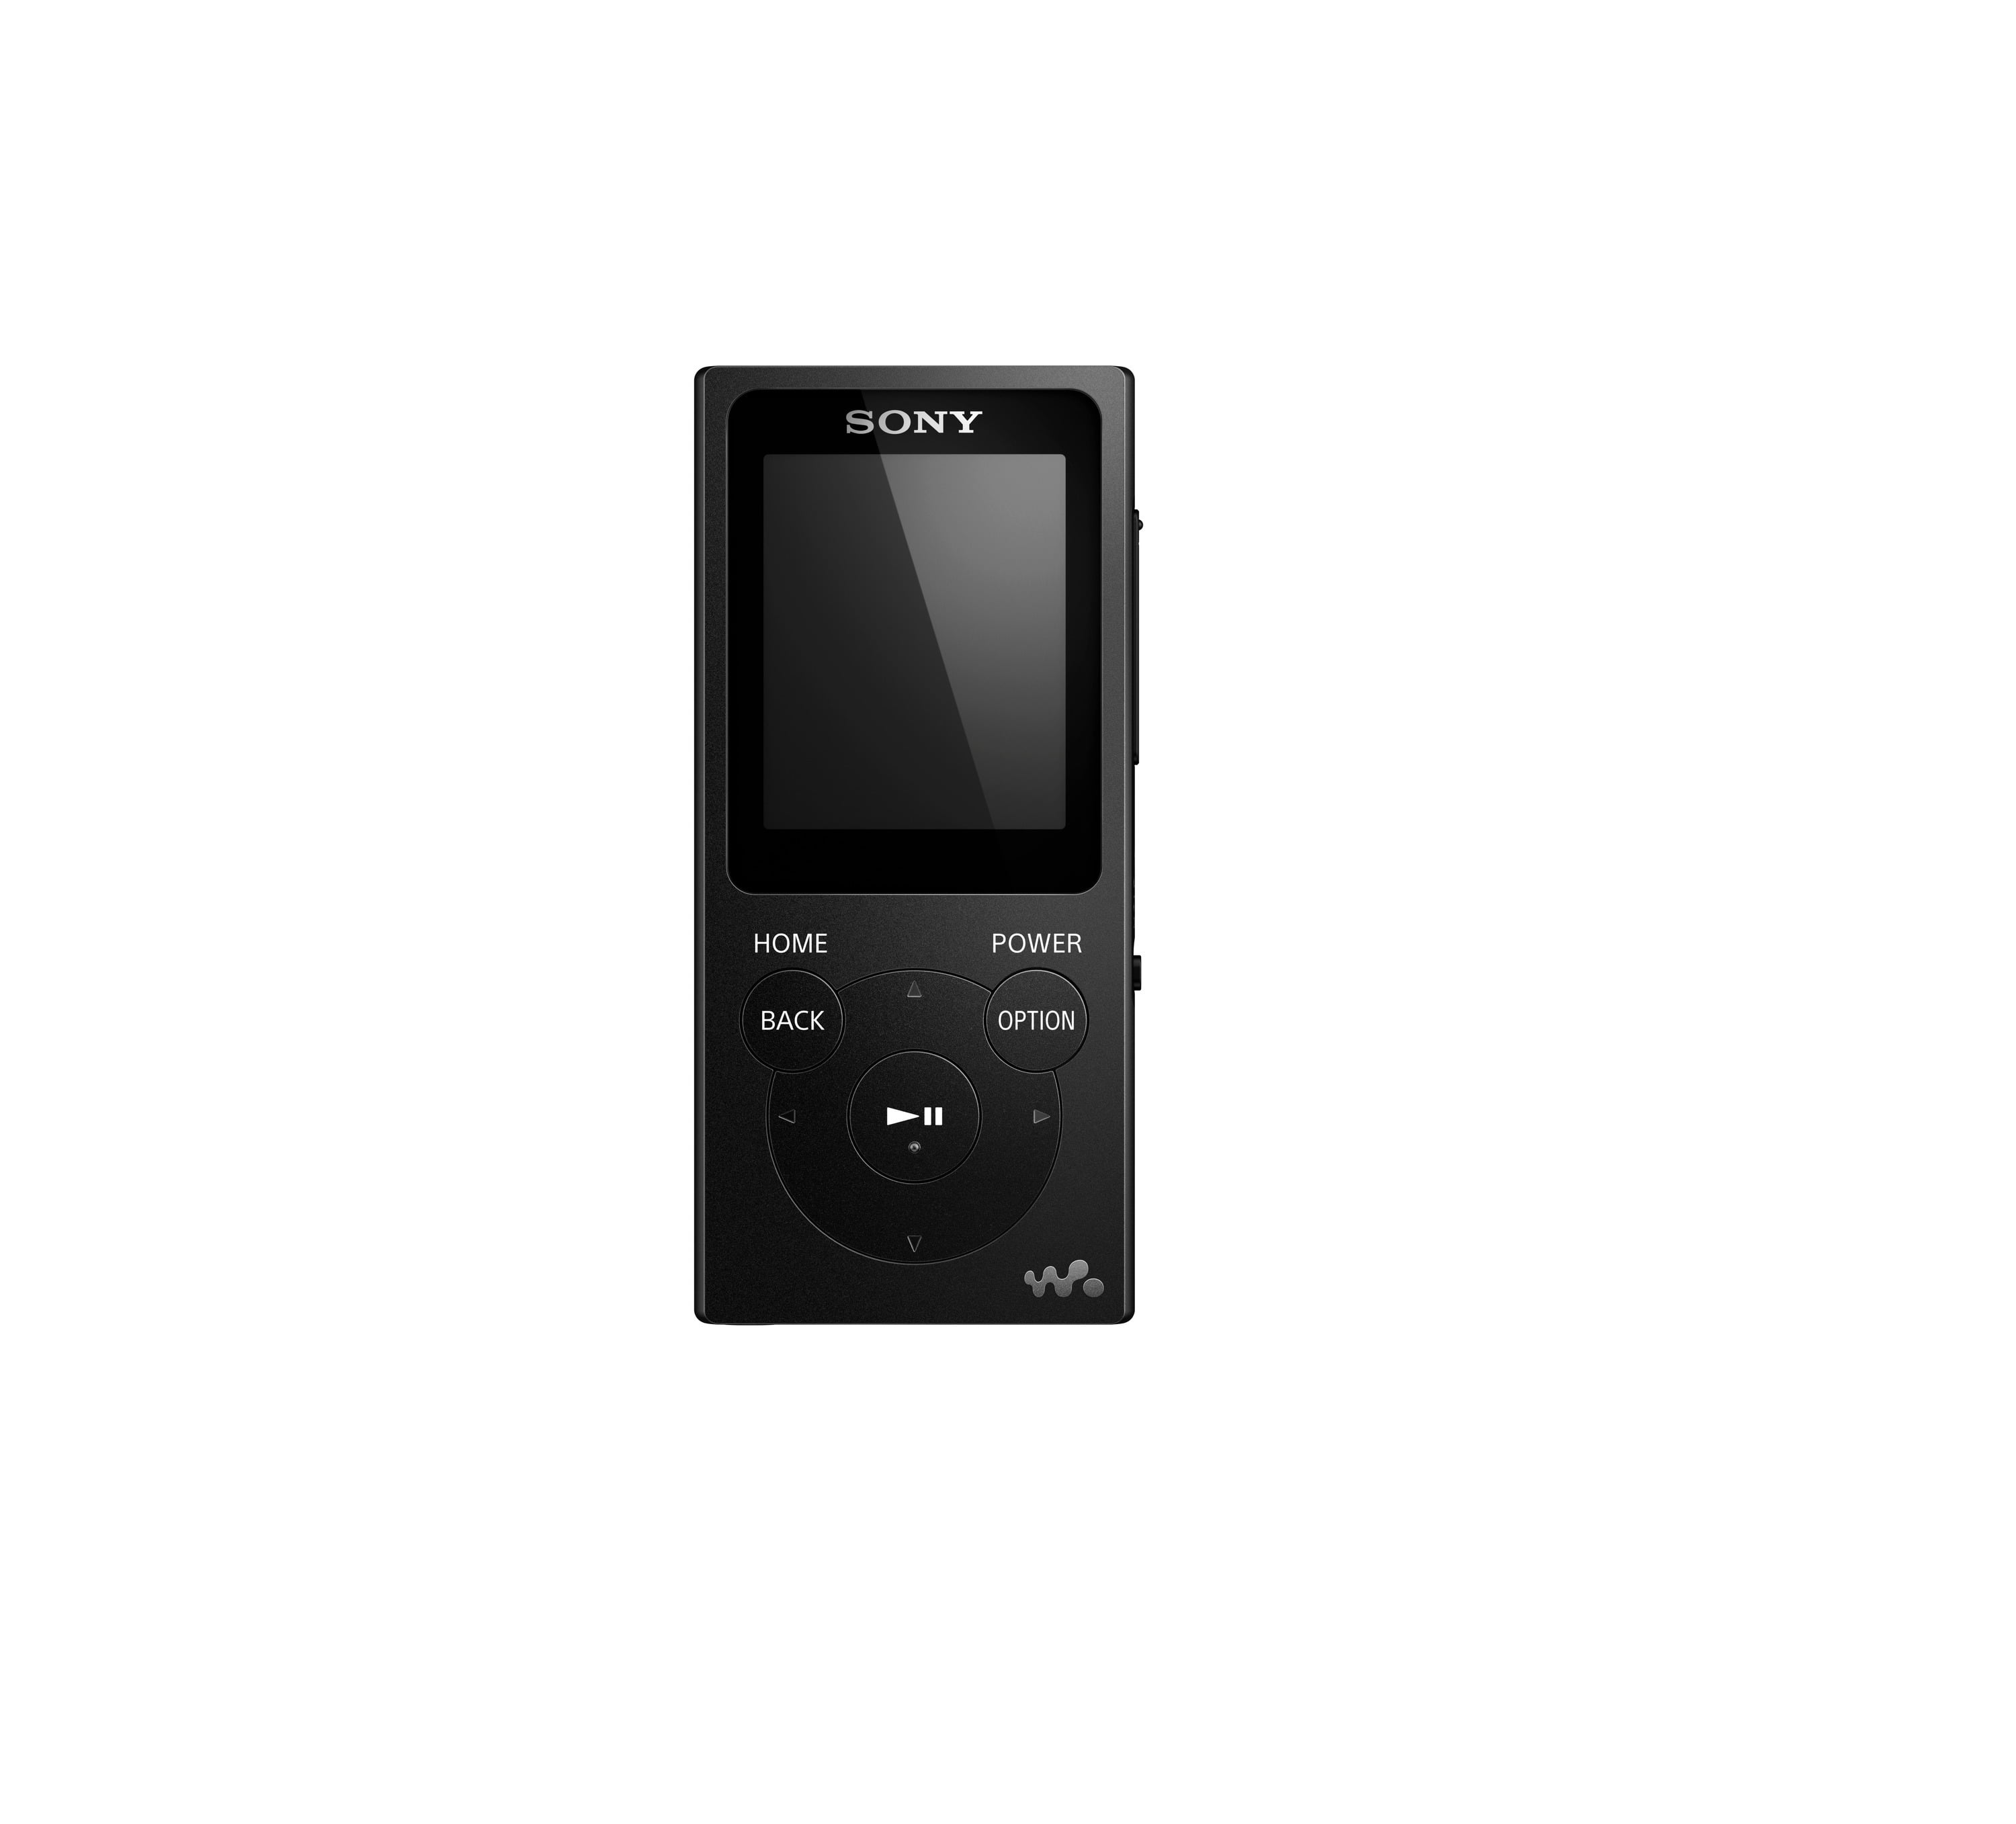 SONY Walkman NW-E394B 8 GB MP3 Player with FM Radio Black Free UK Postage. 